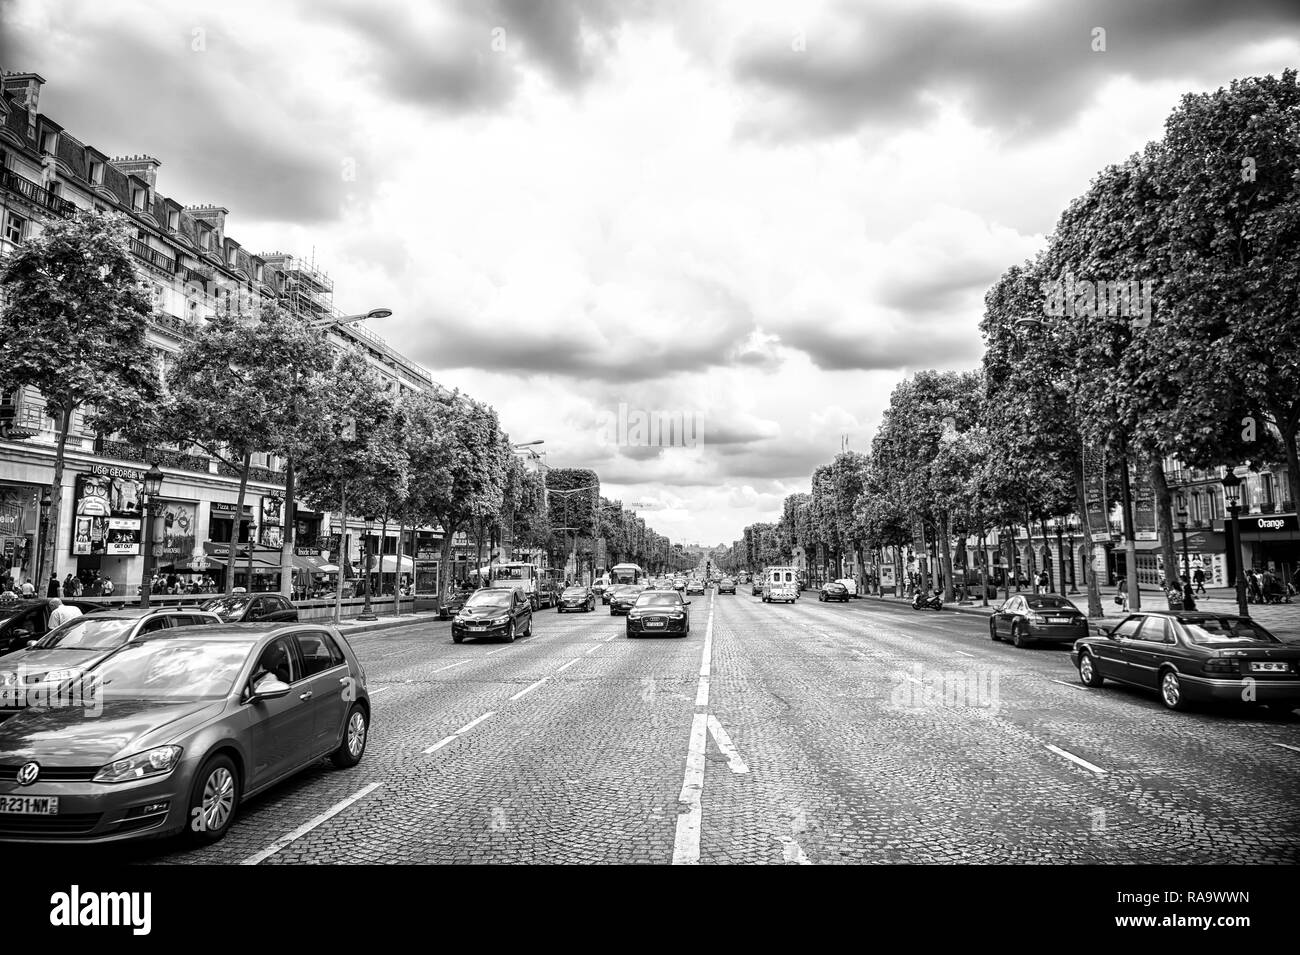 Paris, Frankreich - Juni 02, 2017: Avenue des Champs Elysees mit viel Verkehr. Elysian Fields Road an bewölkten Himmel. Urlaub und Reisen in die französische Hauptstadt. Stockfoto